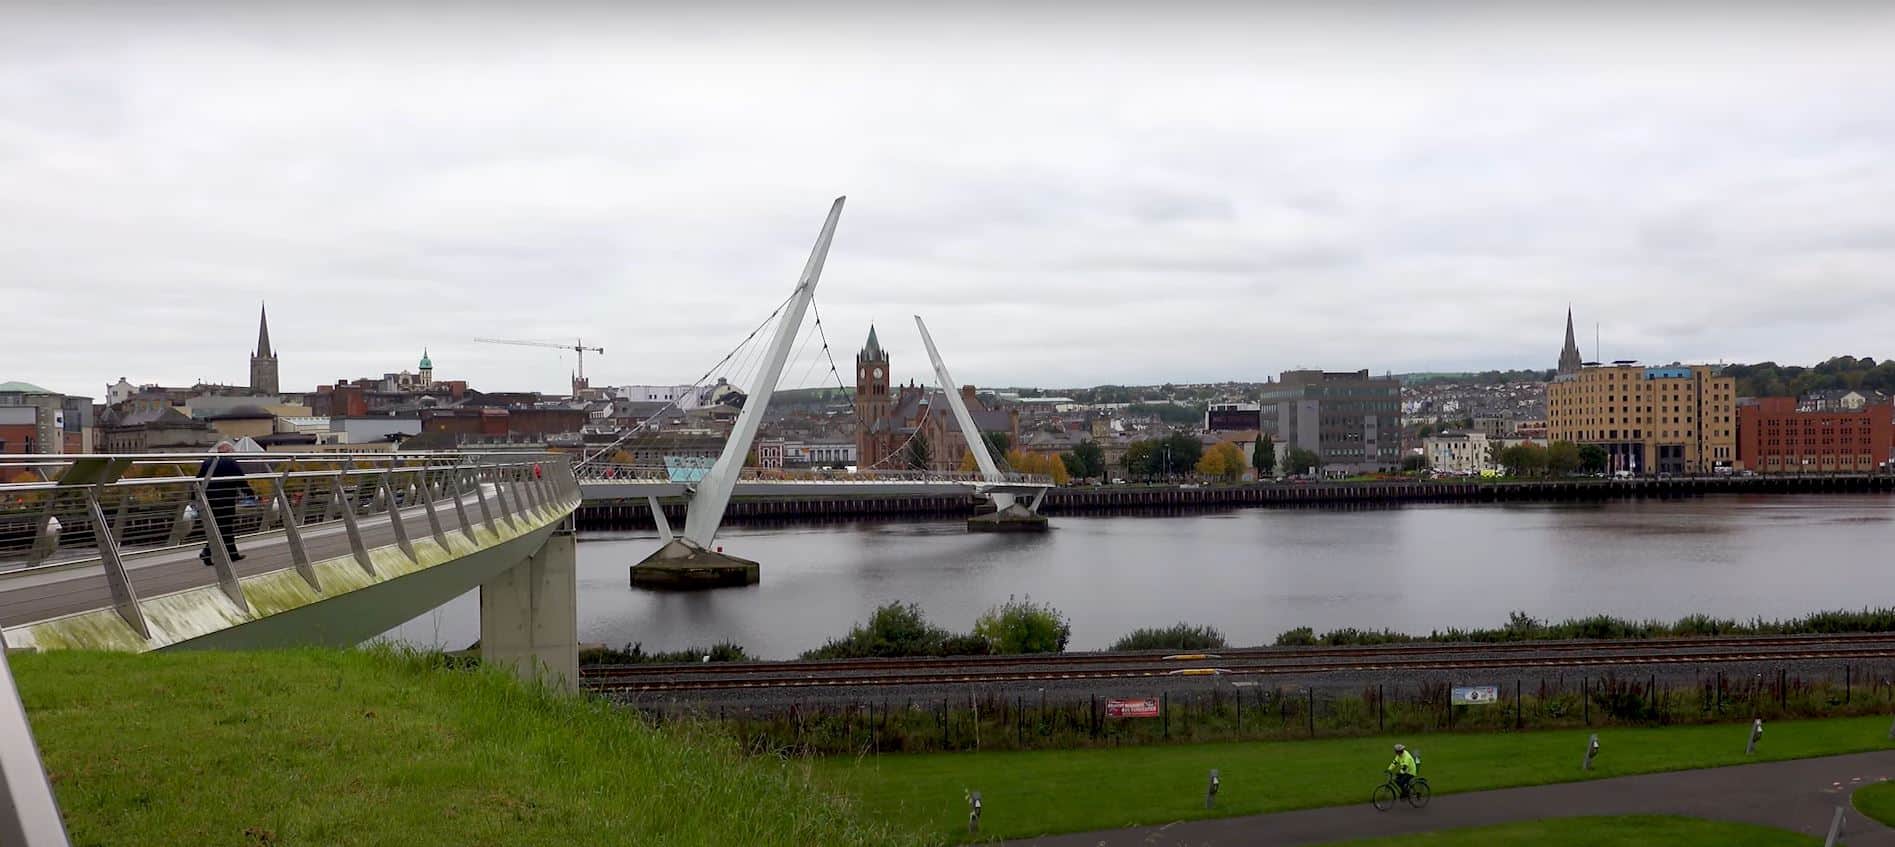 Derry City, Northern Ireland